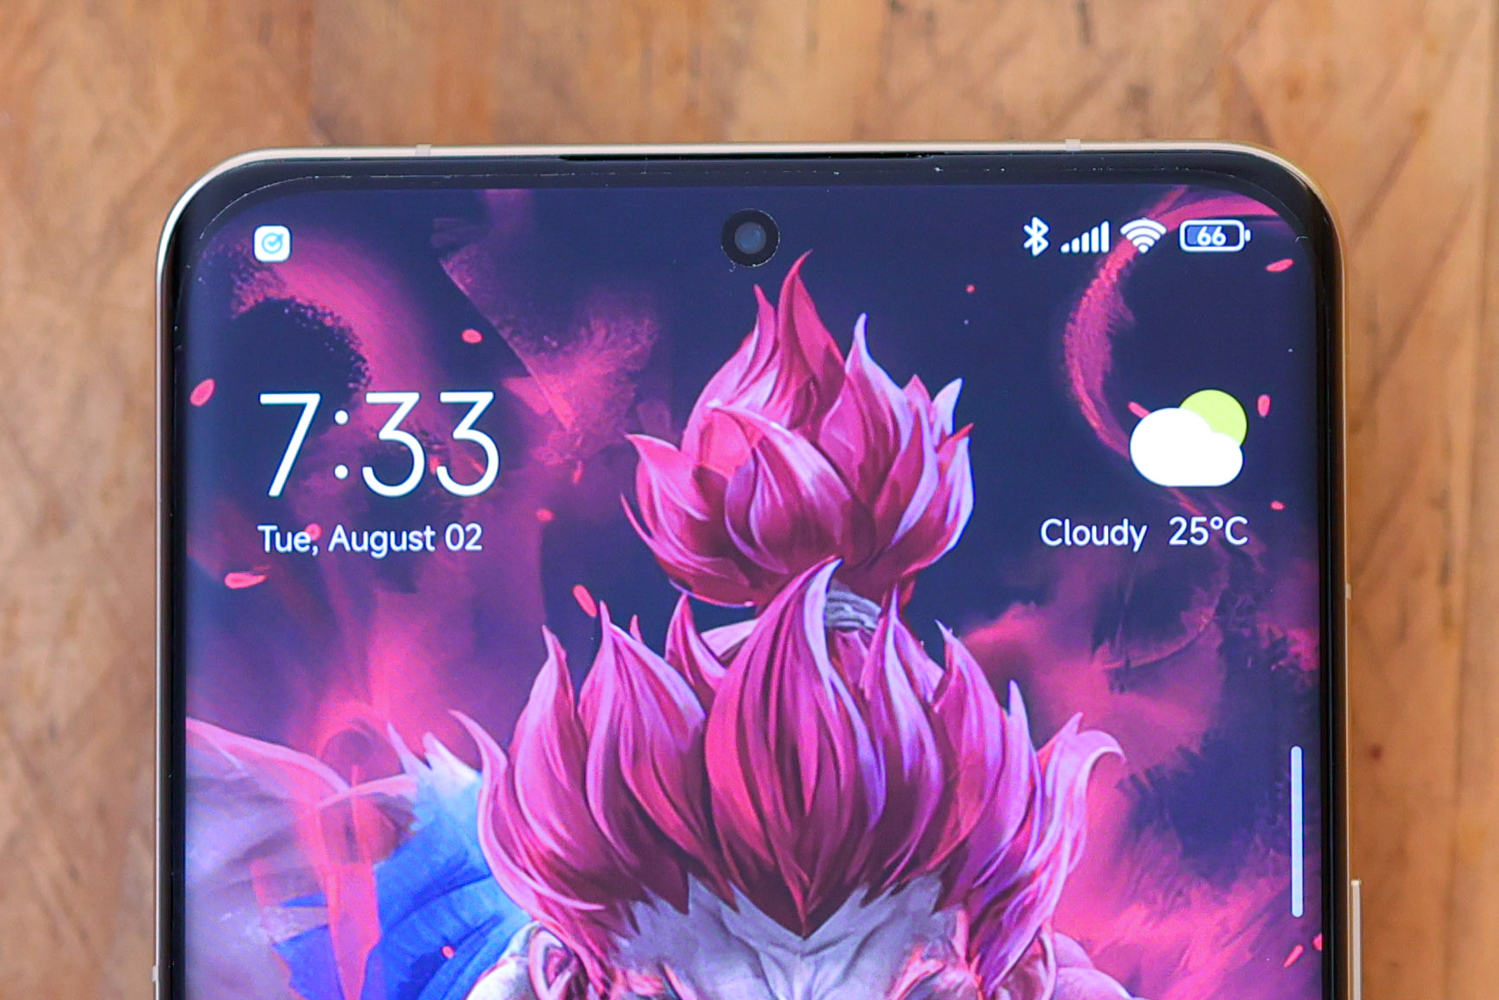 Xiaomi 12S Ultra full review 